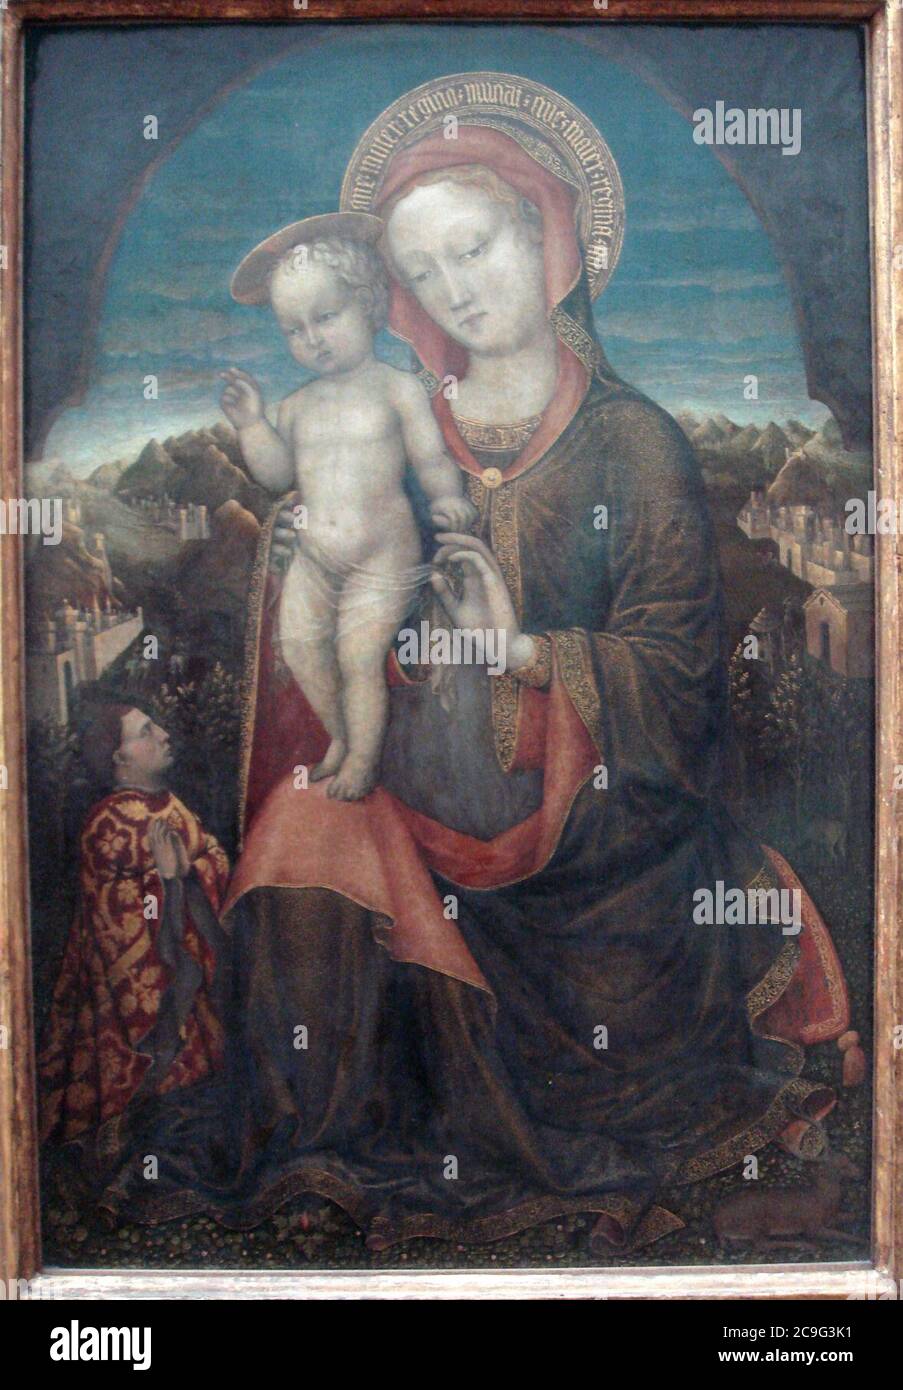 Jacopo Bellini La Vierge d humilite adoree par un prince de la maison d Estee 1440. Stock Photo